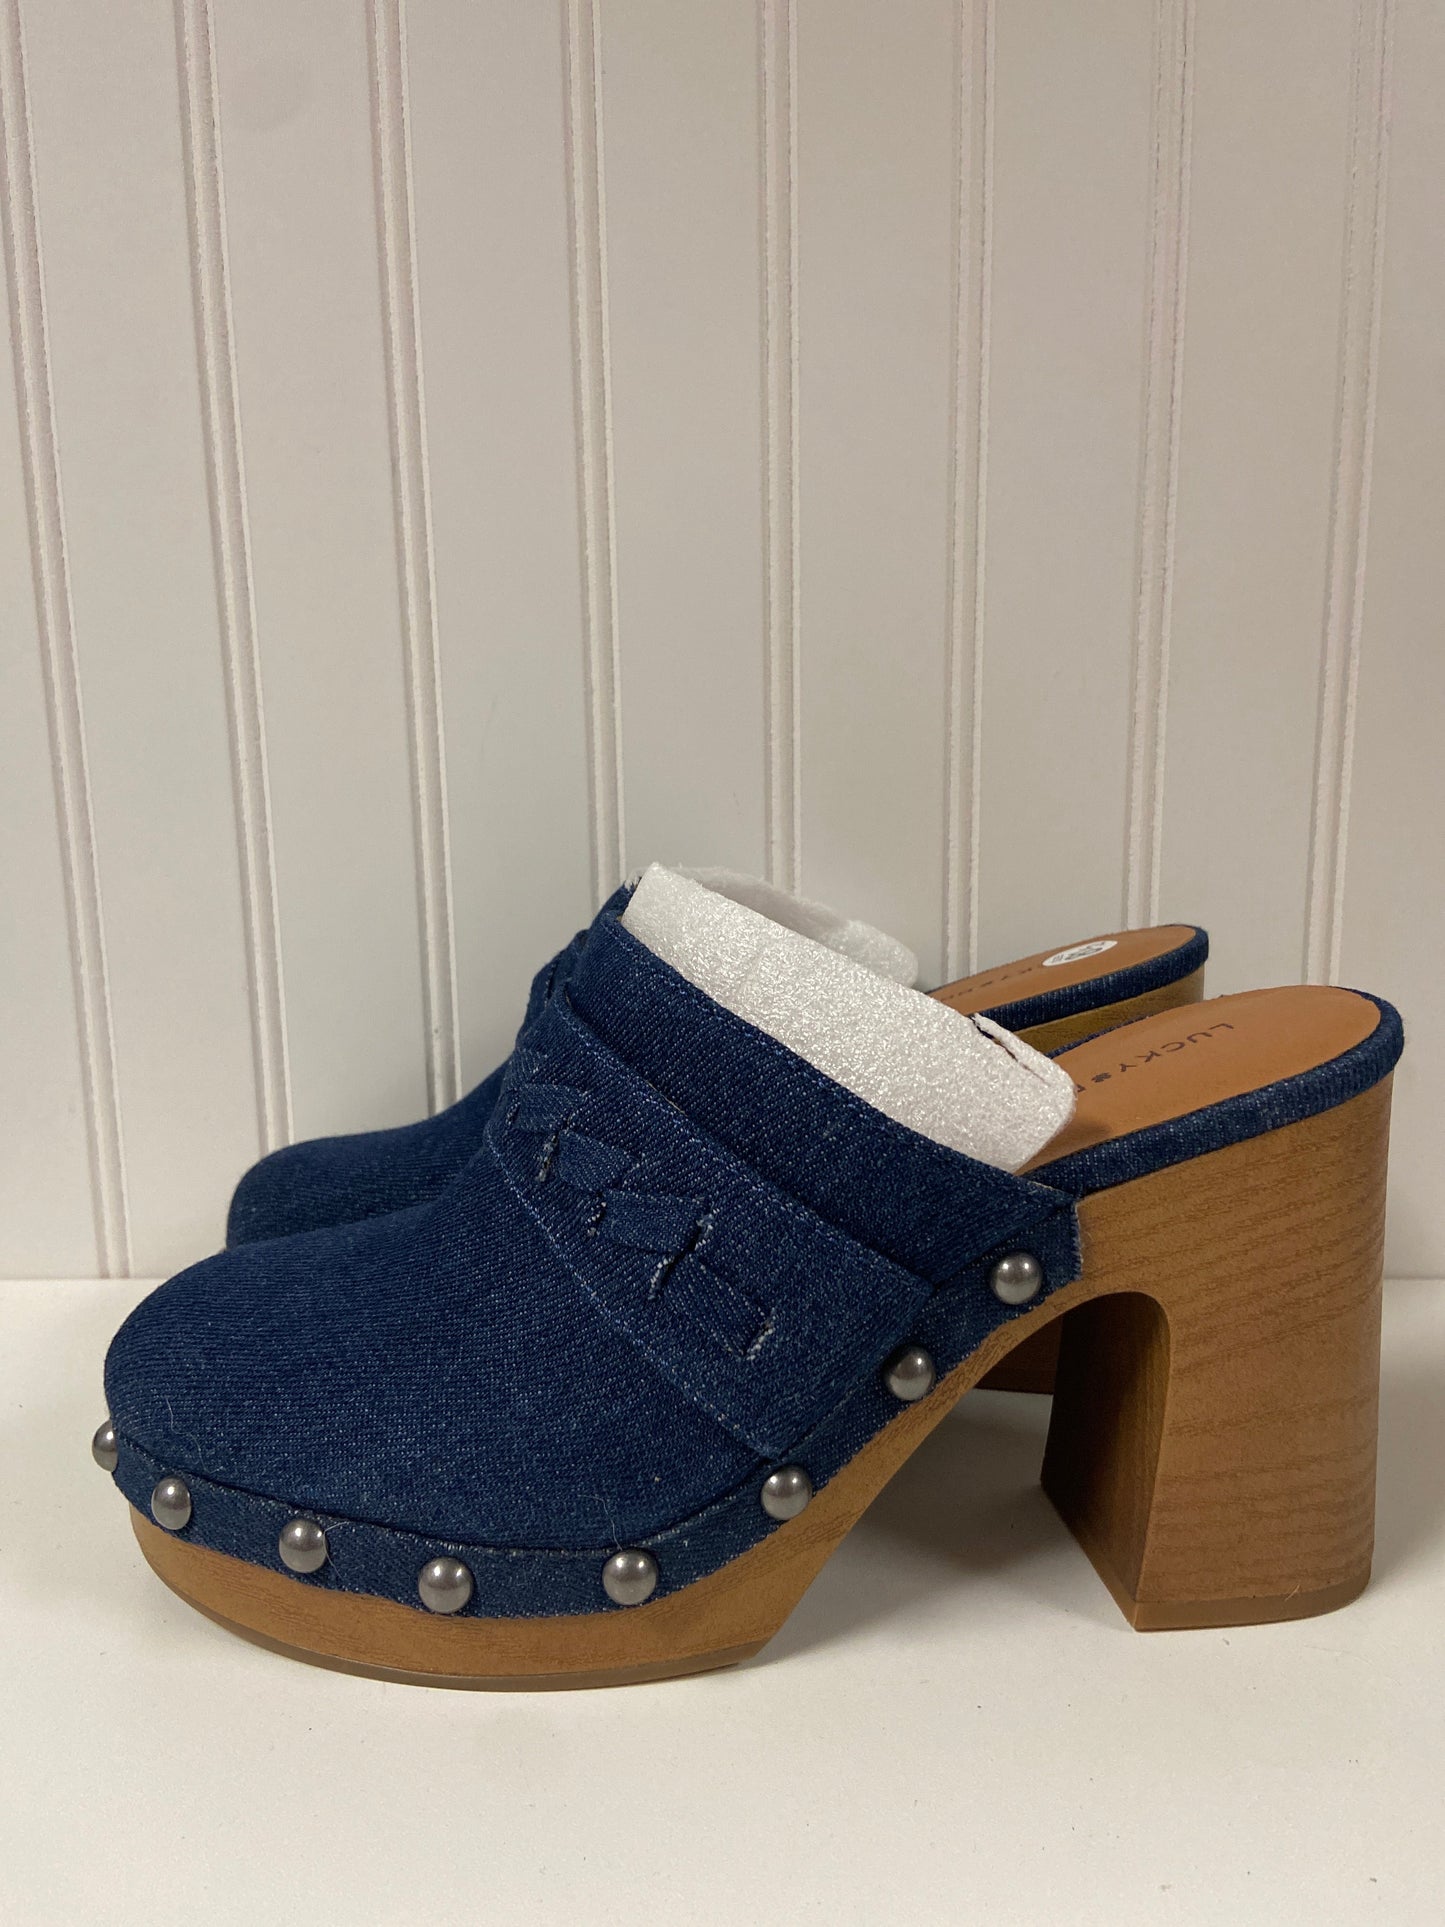 Blue Denim Shoes Heels Block Lucky Brand, Size 8.5